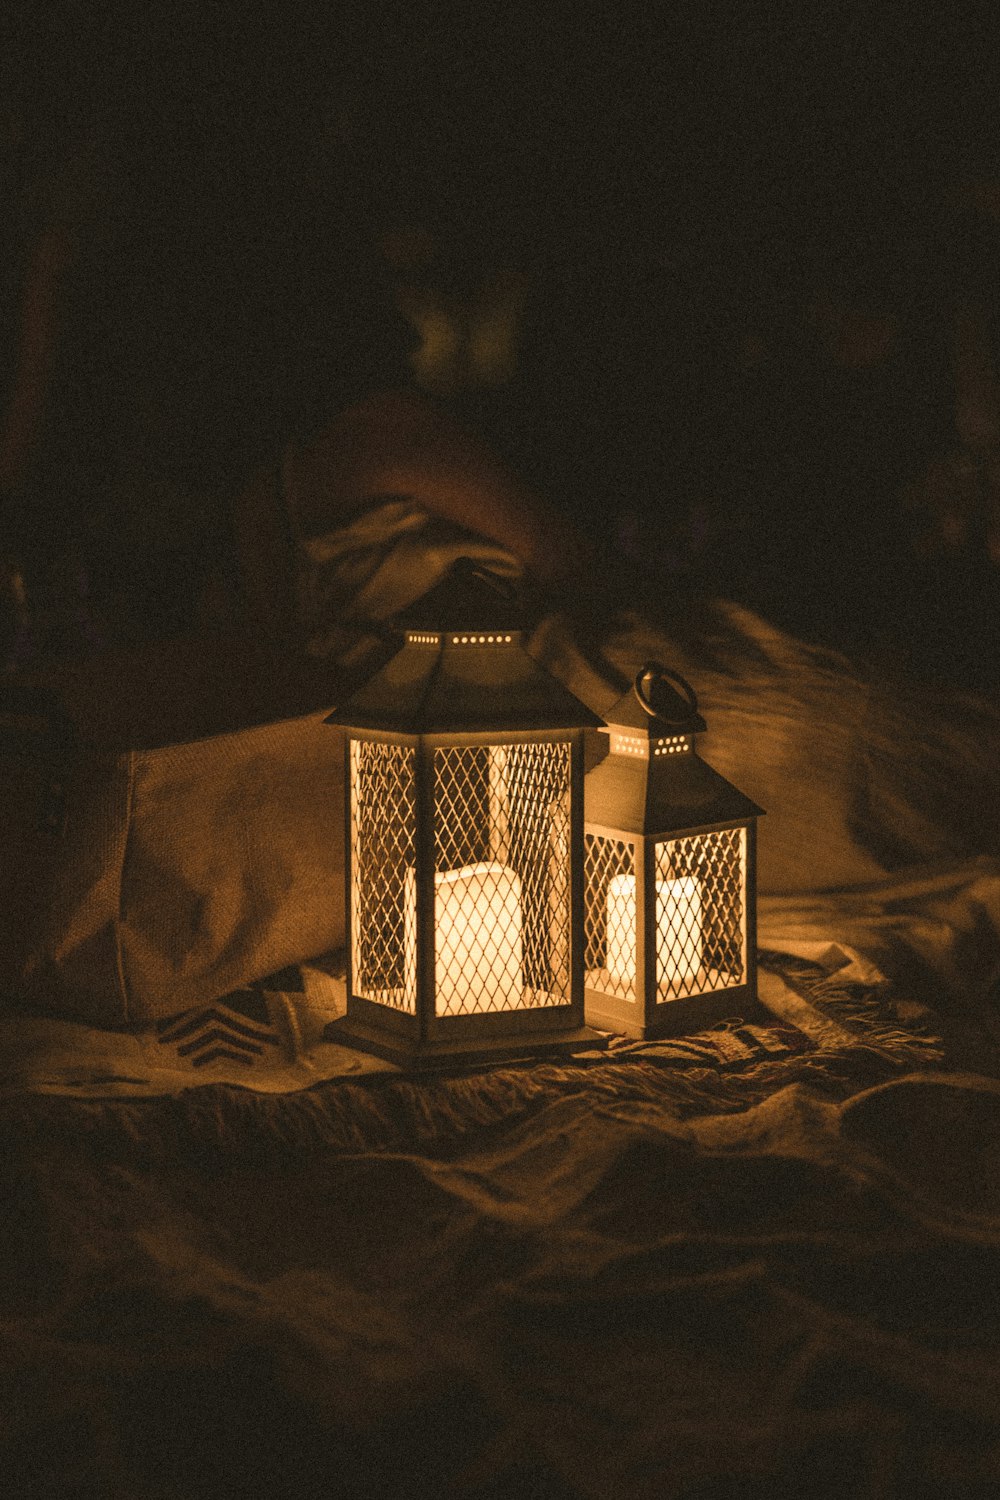 Camping Light: Thích trại ngoài trời với bạn bè và gia đình? Chắc chắn sẽ không thể thiếu chiếc đèn trại, và giờ đây, bạn có thể xem những hình ảnh đẹp về đèn trại để tìm cho mình chiếc đèn hoàn hảo nhất.